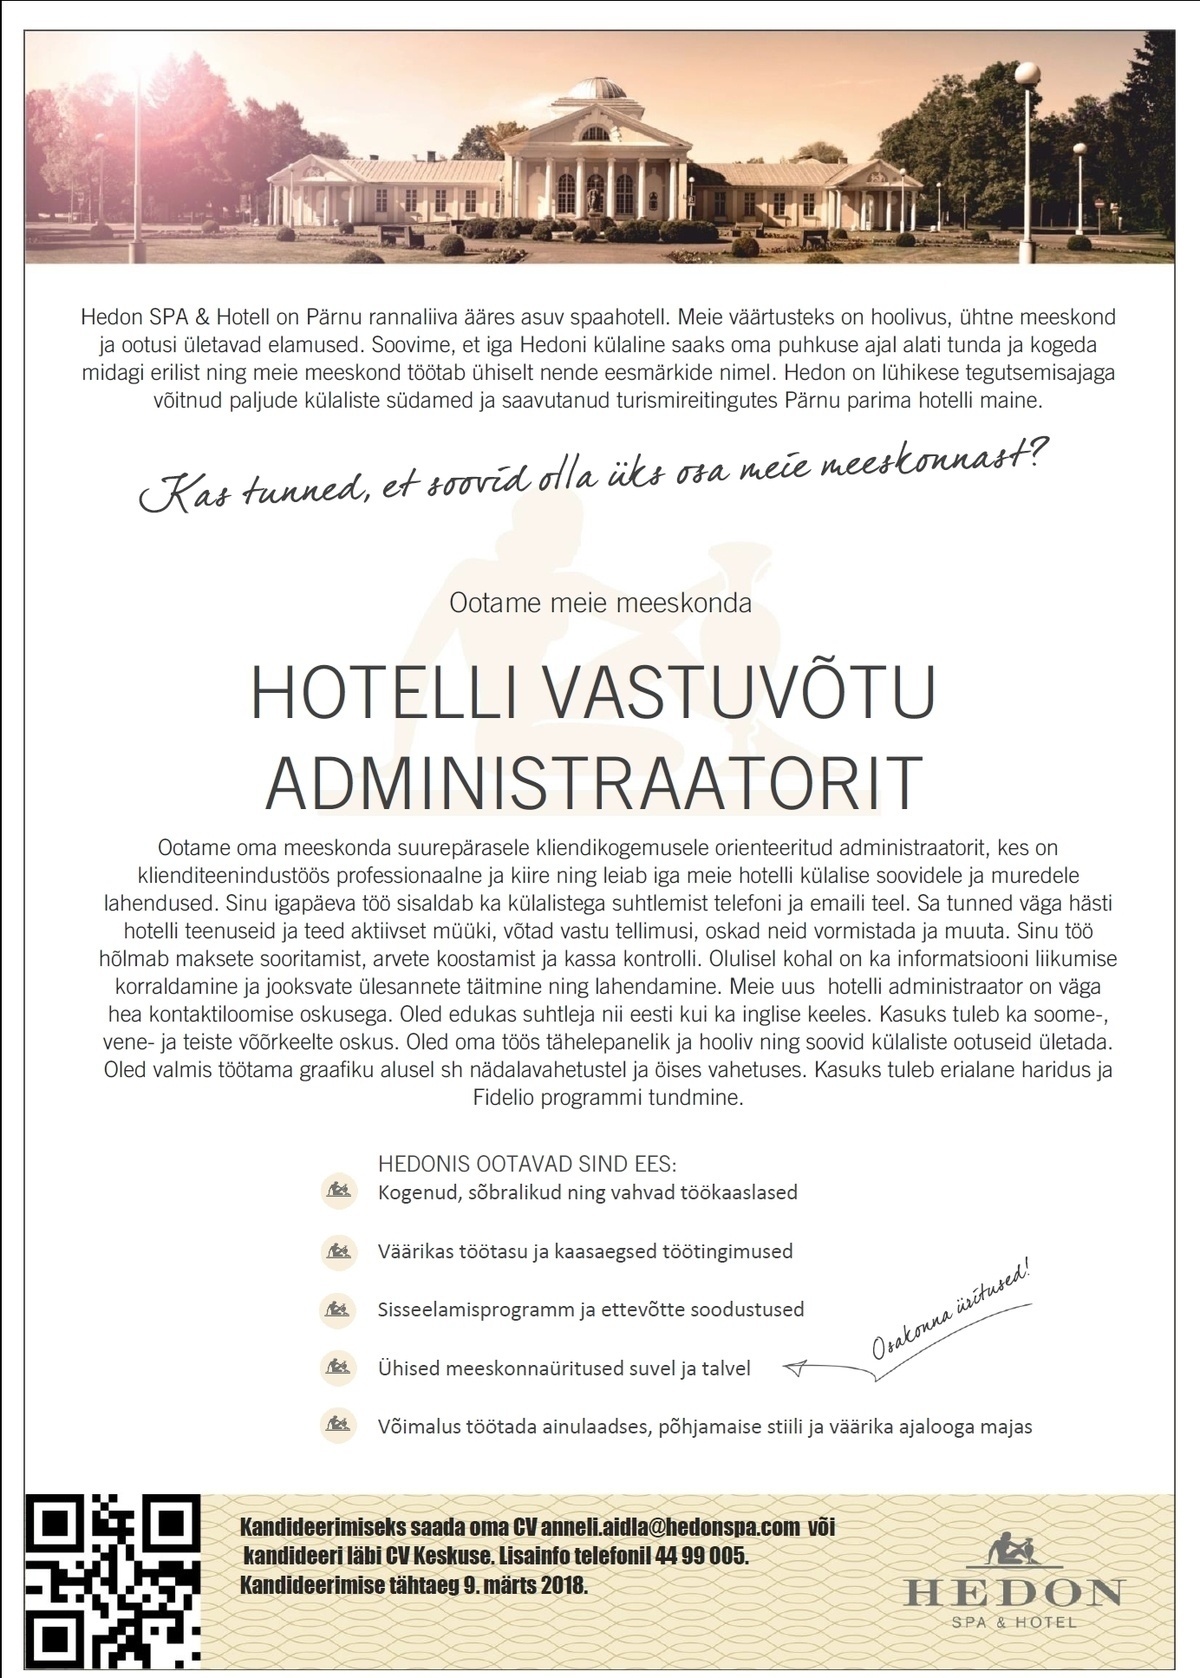 Supeluse Hotell OÜ Hedon SPA & HOTEL Vastuvõtuadministraator